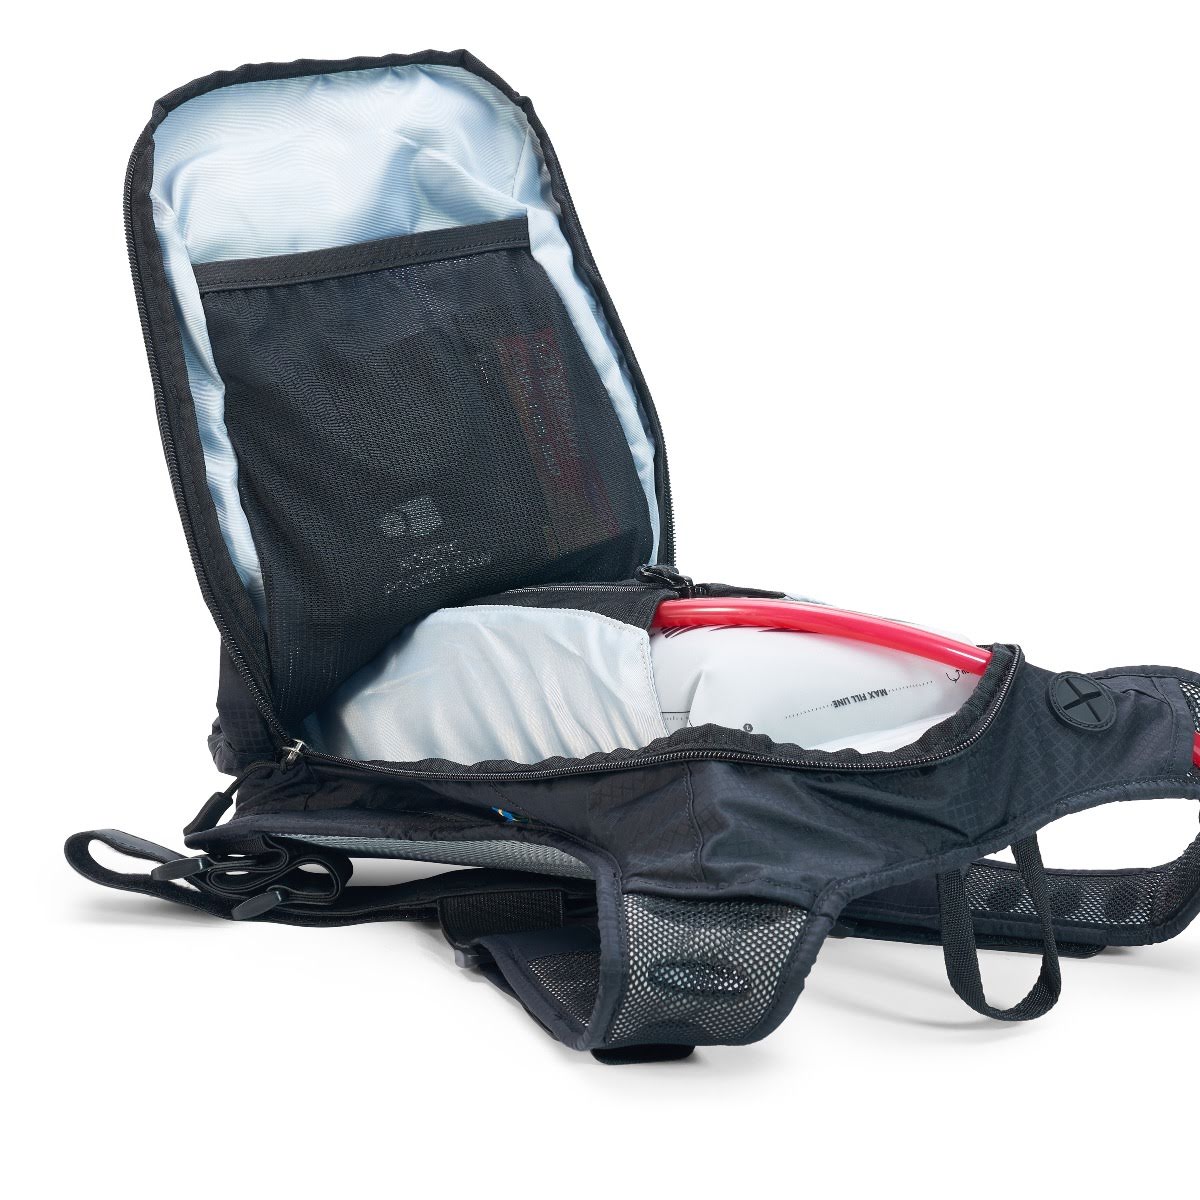 USWE Outlander 9 Hydration Backpack Black – With 3 Litre Bladder